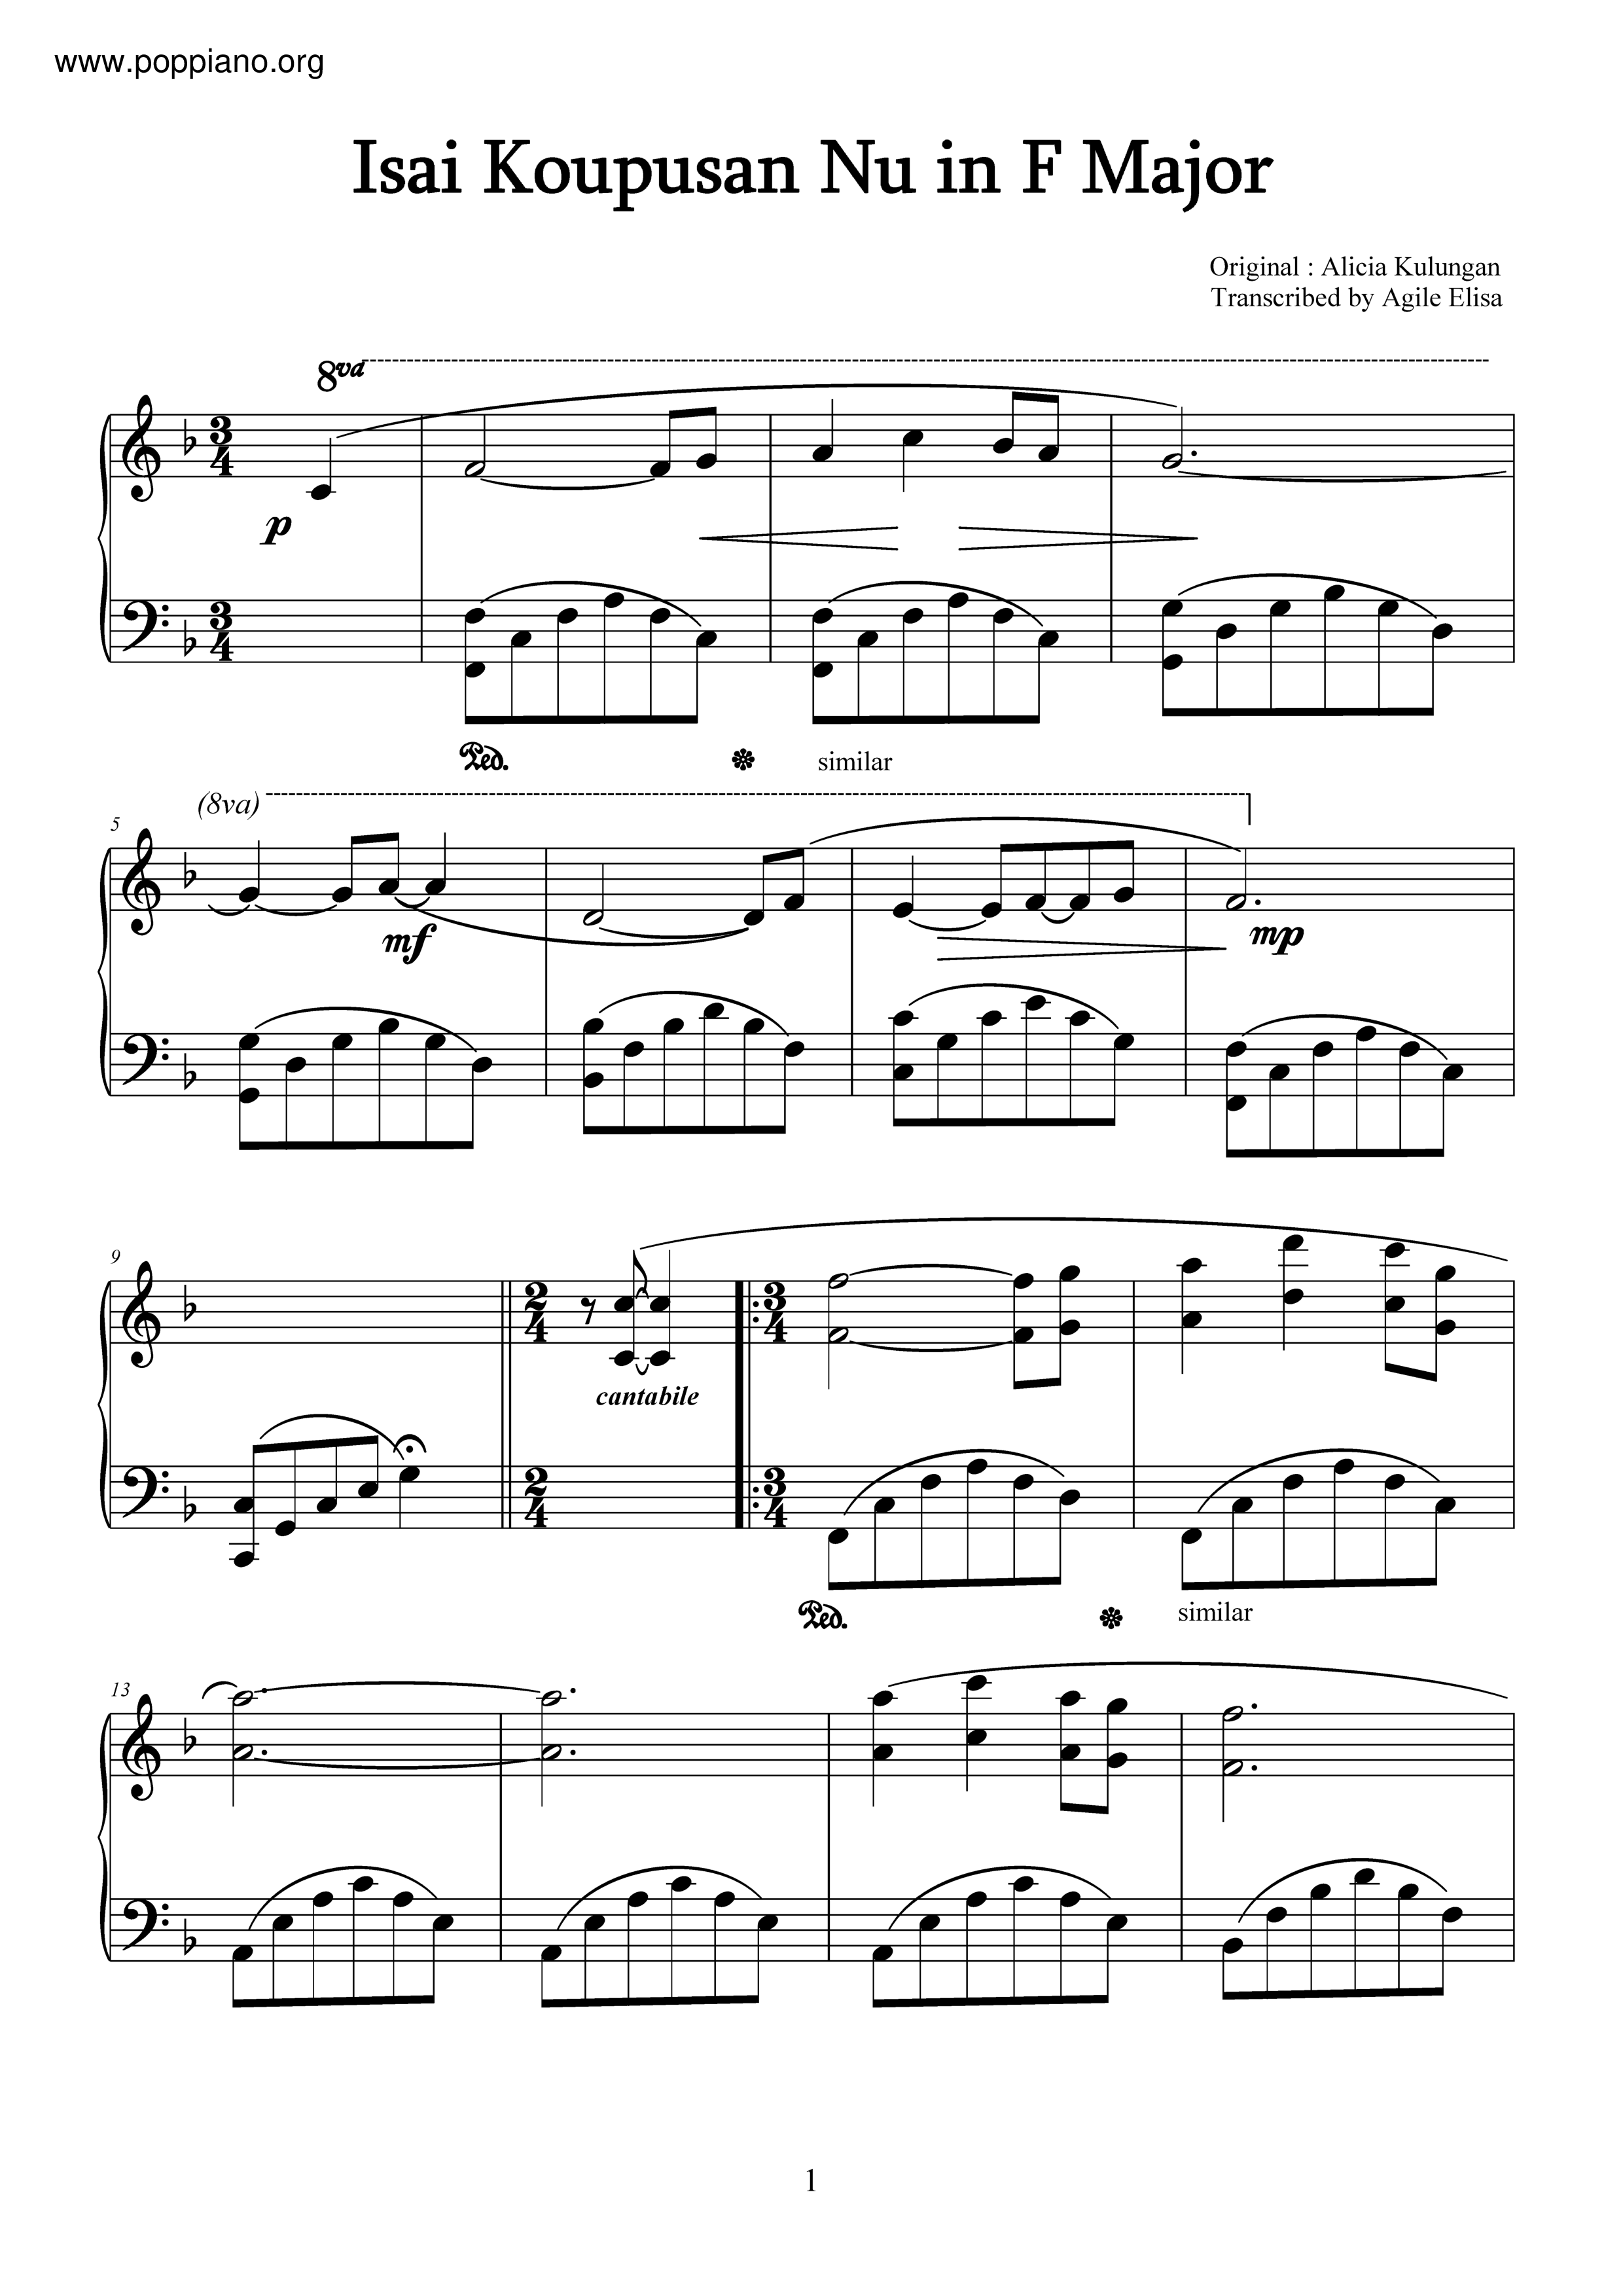 Isai Koupusan Nu (Kadazan Sabahan Song) Score